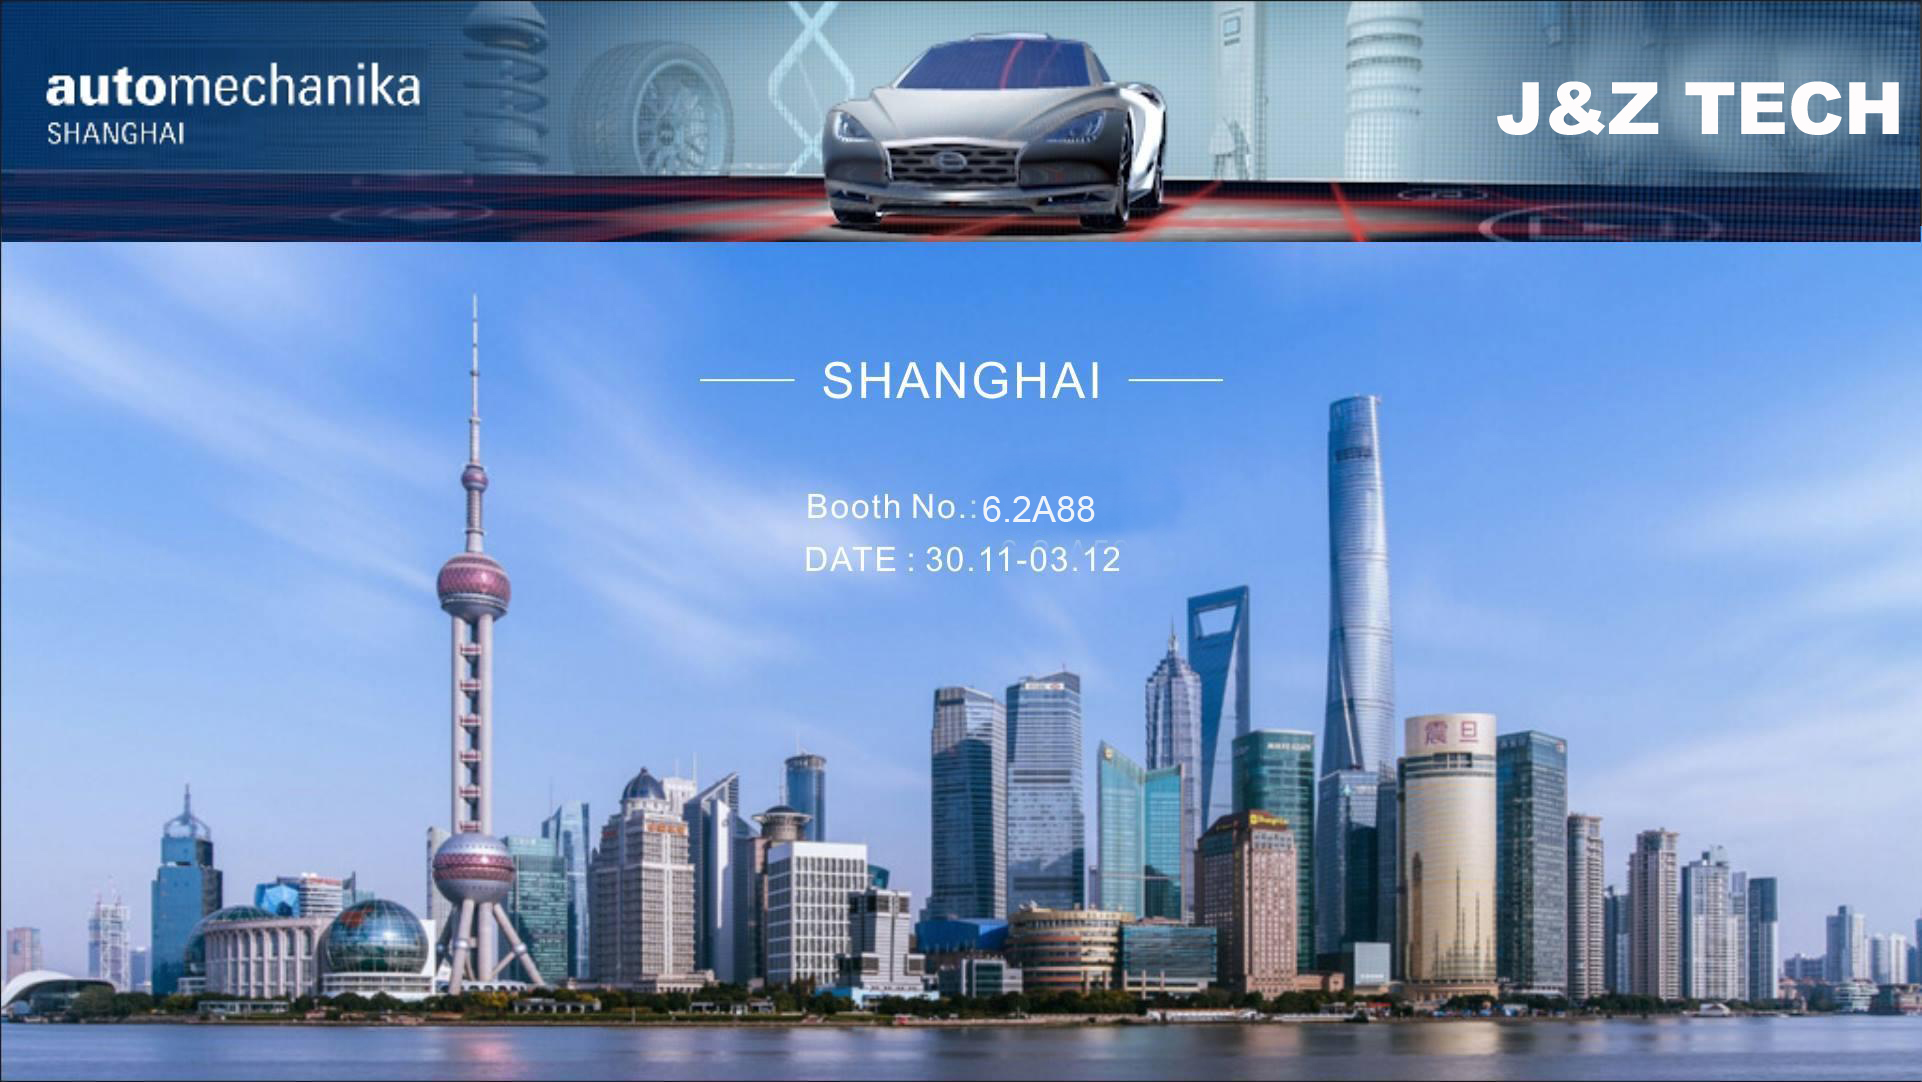 j&z shanghai automechanika show